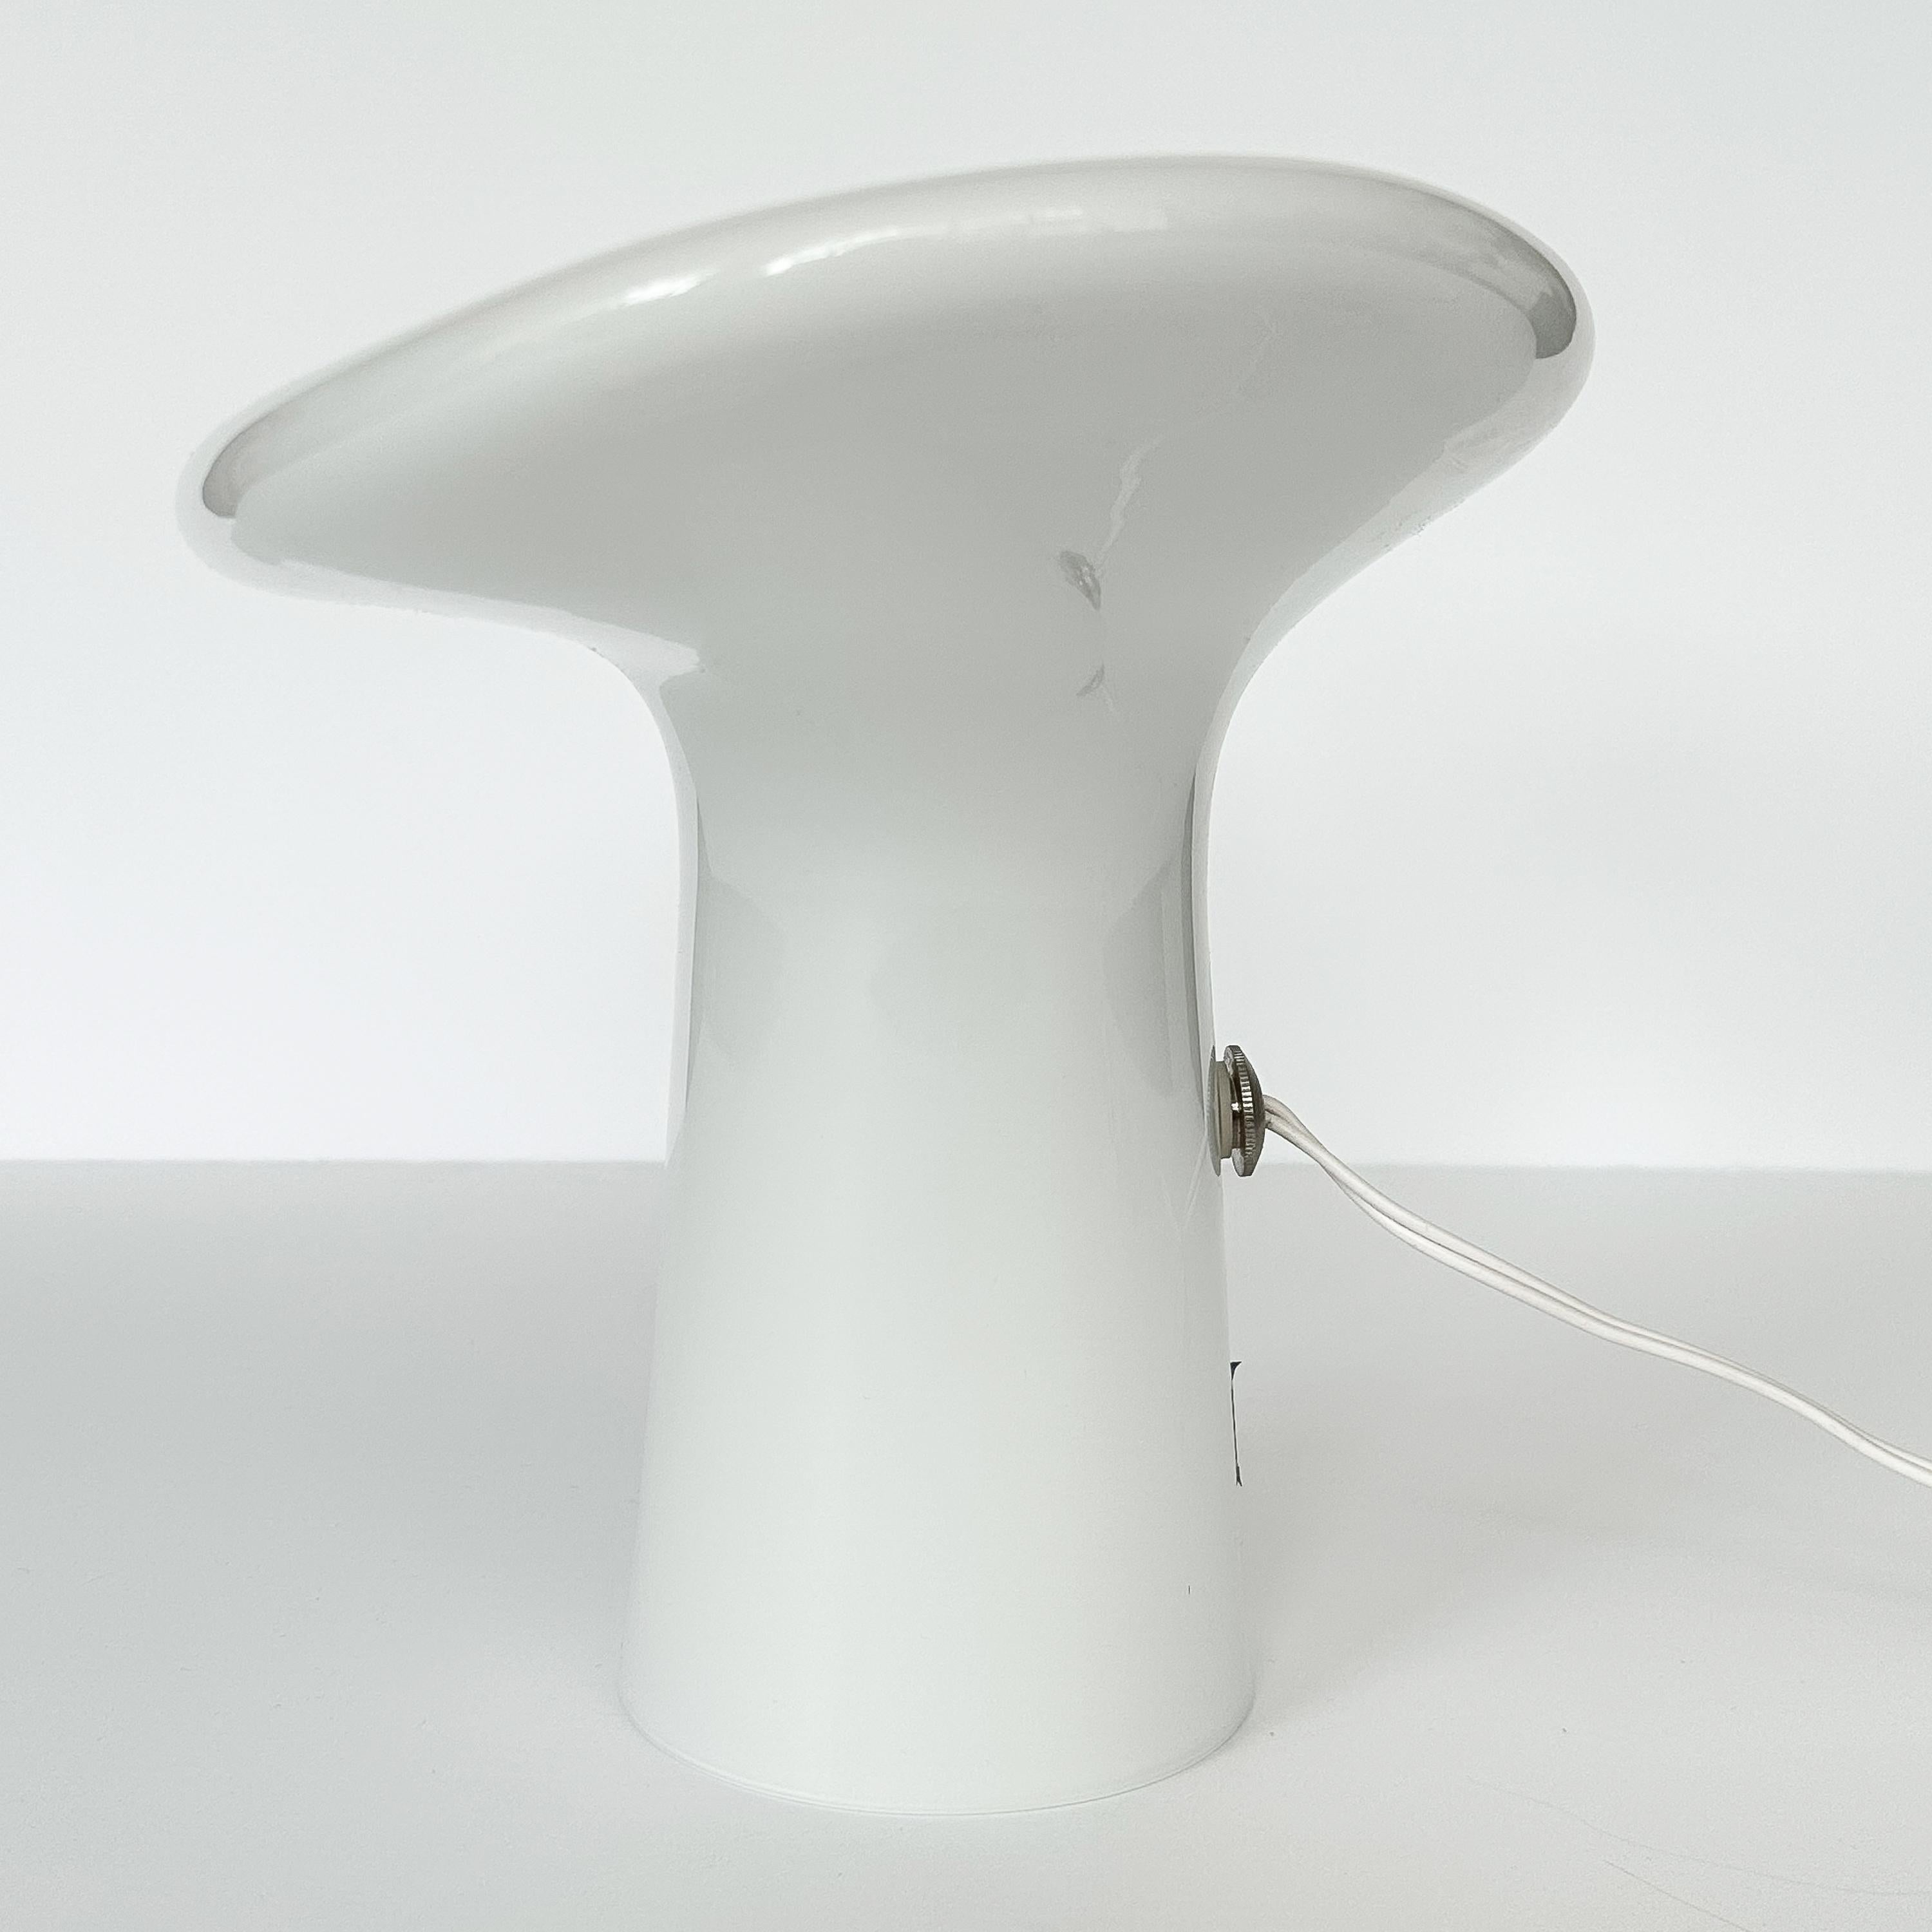 Vistosi Small Mushroom Table Lamp by Gino Vistosi 1